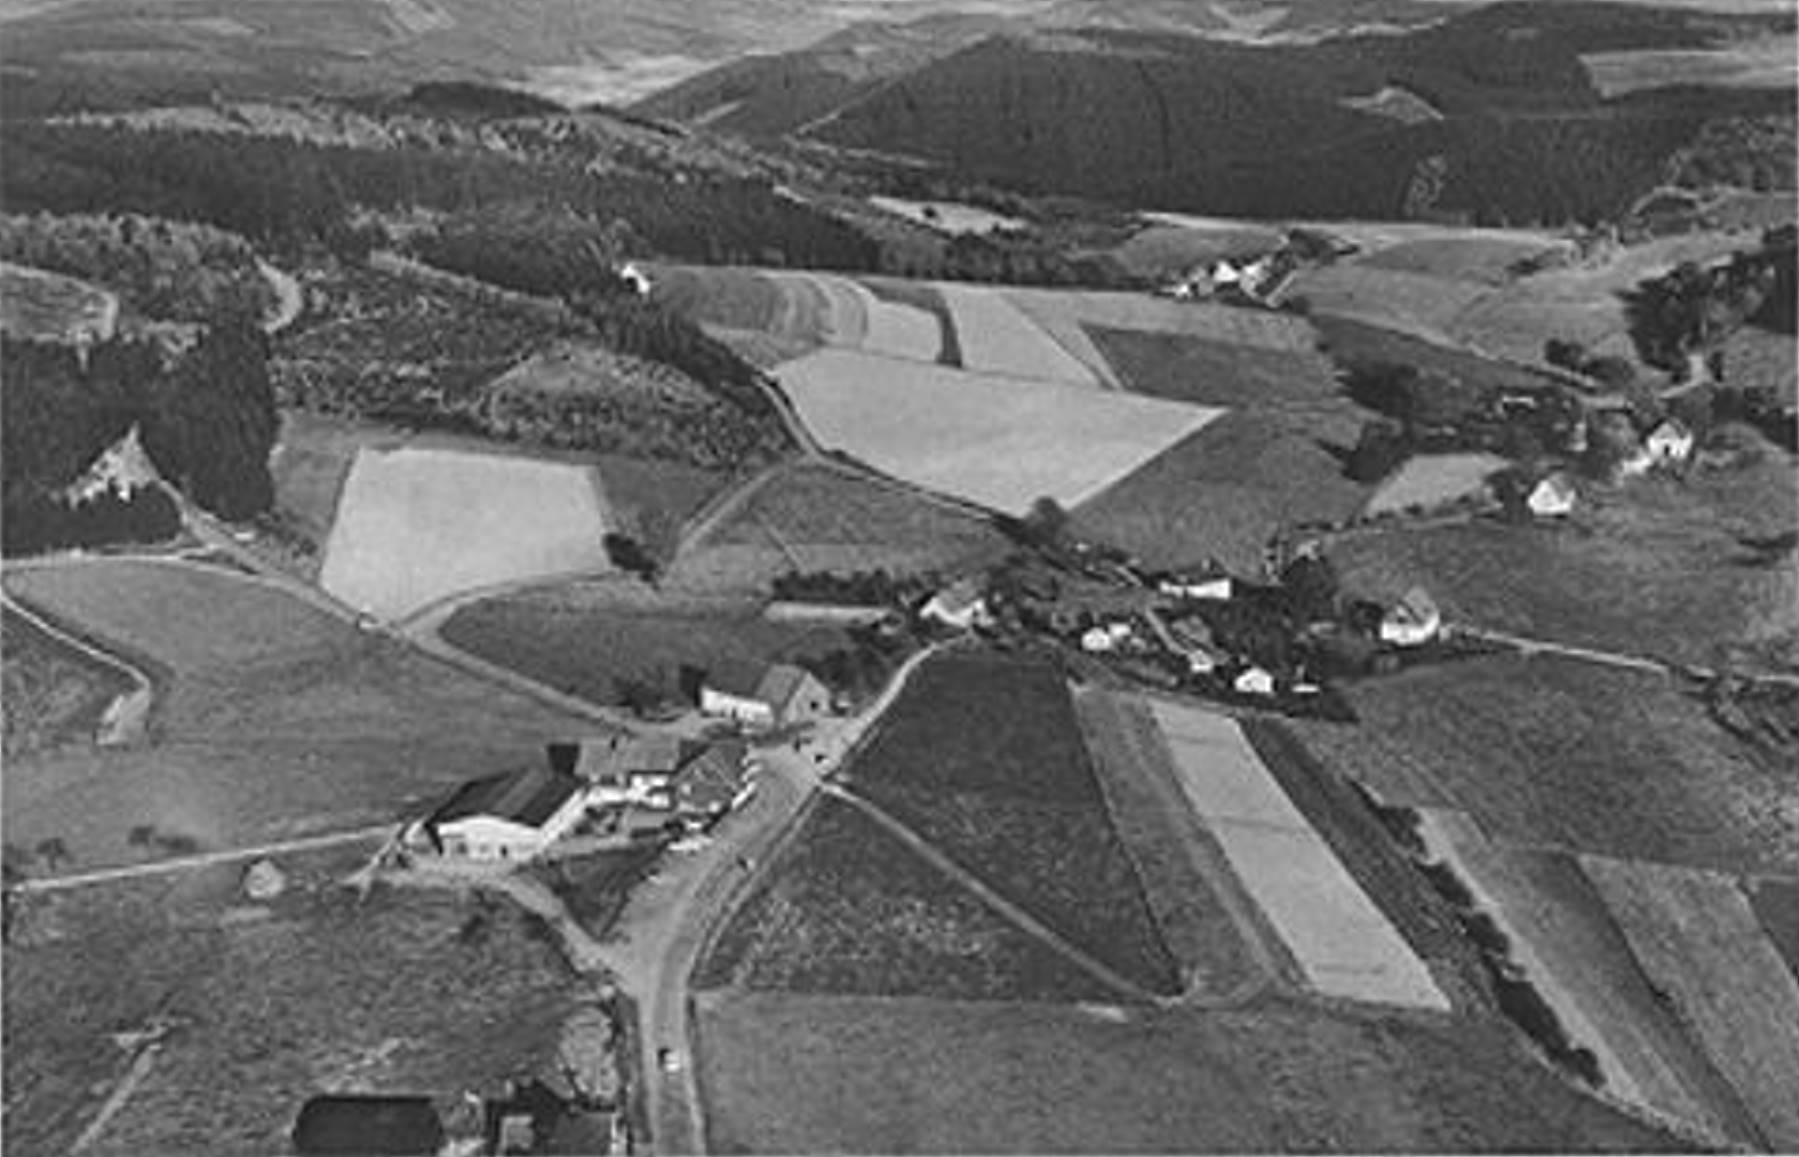 Luftaufnahme Faulebutter. Bild mit freundlicher Gemehmigung des Gemeinde-Archiv Finnentrop